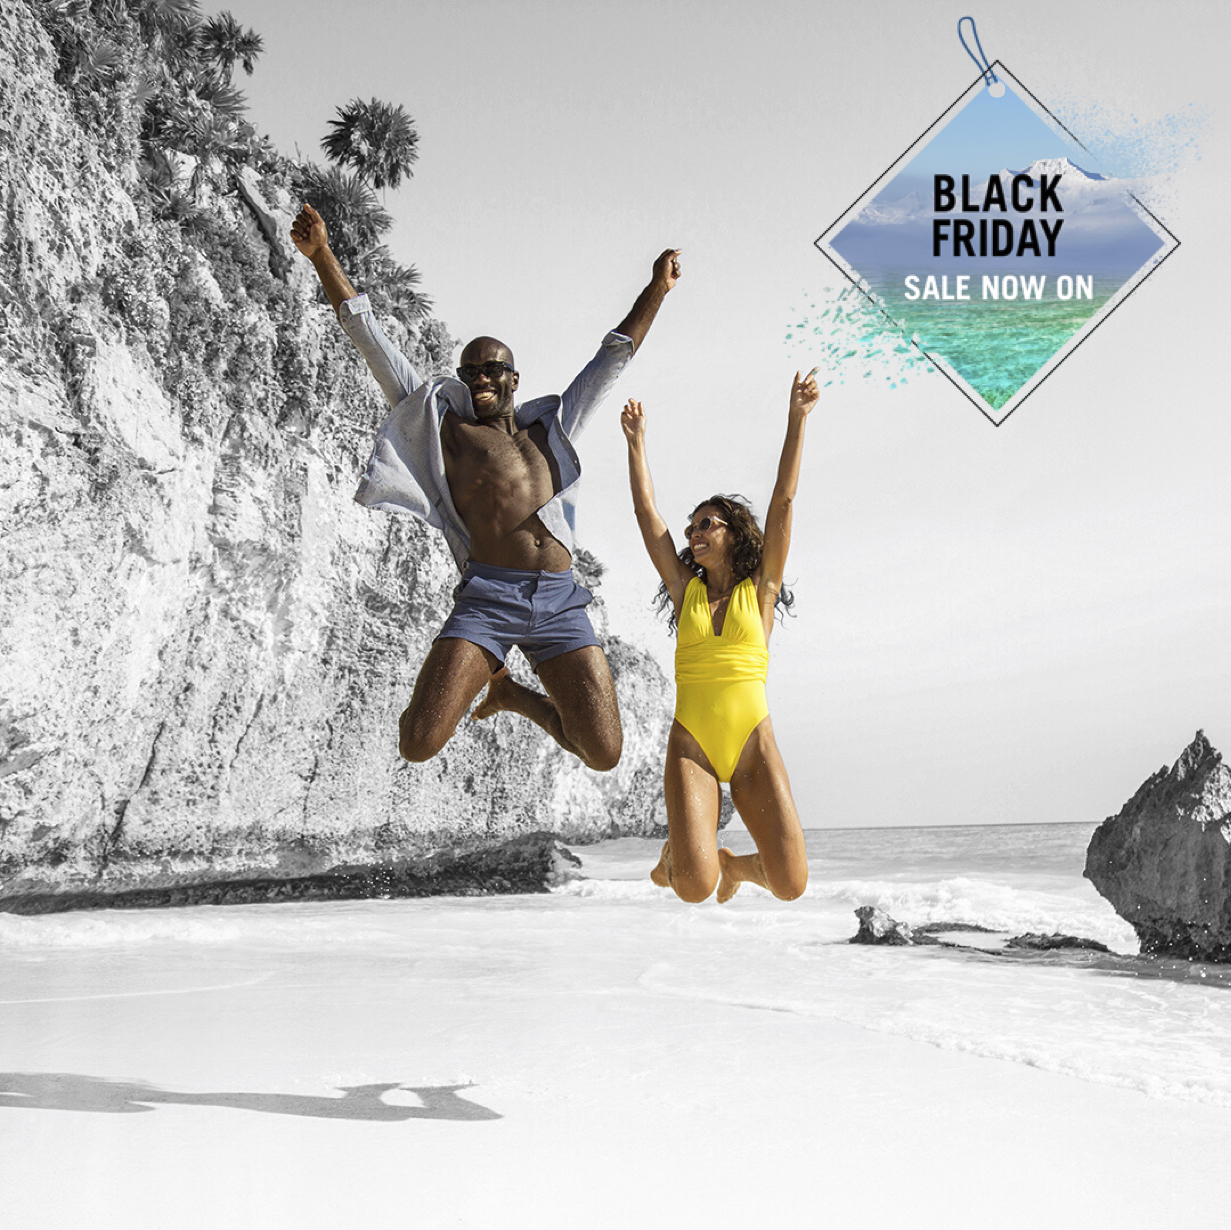 Highlight Club Med's Black Friday 2019 sale